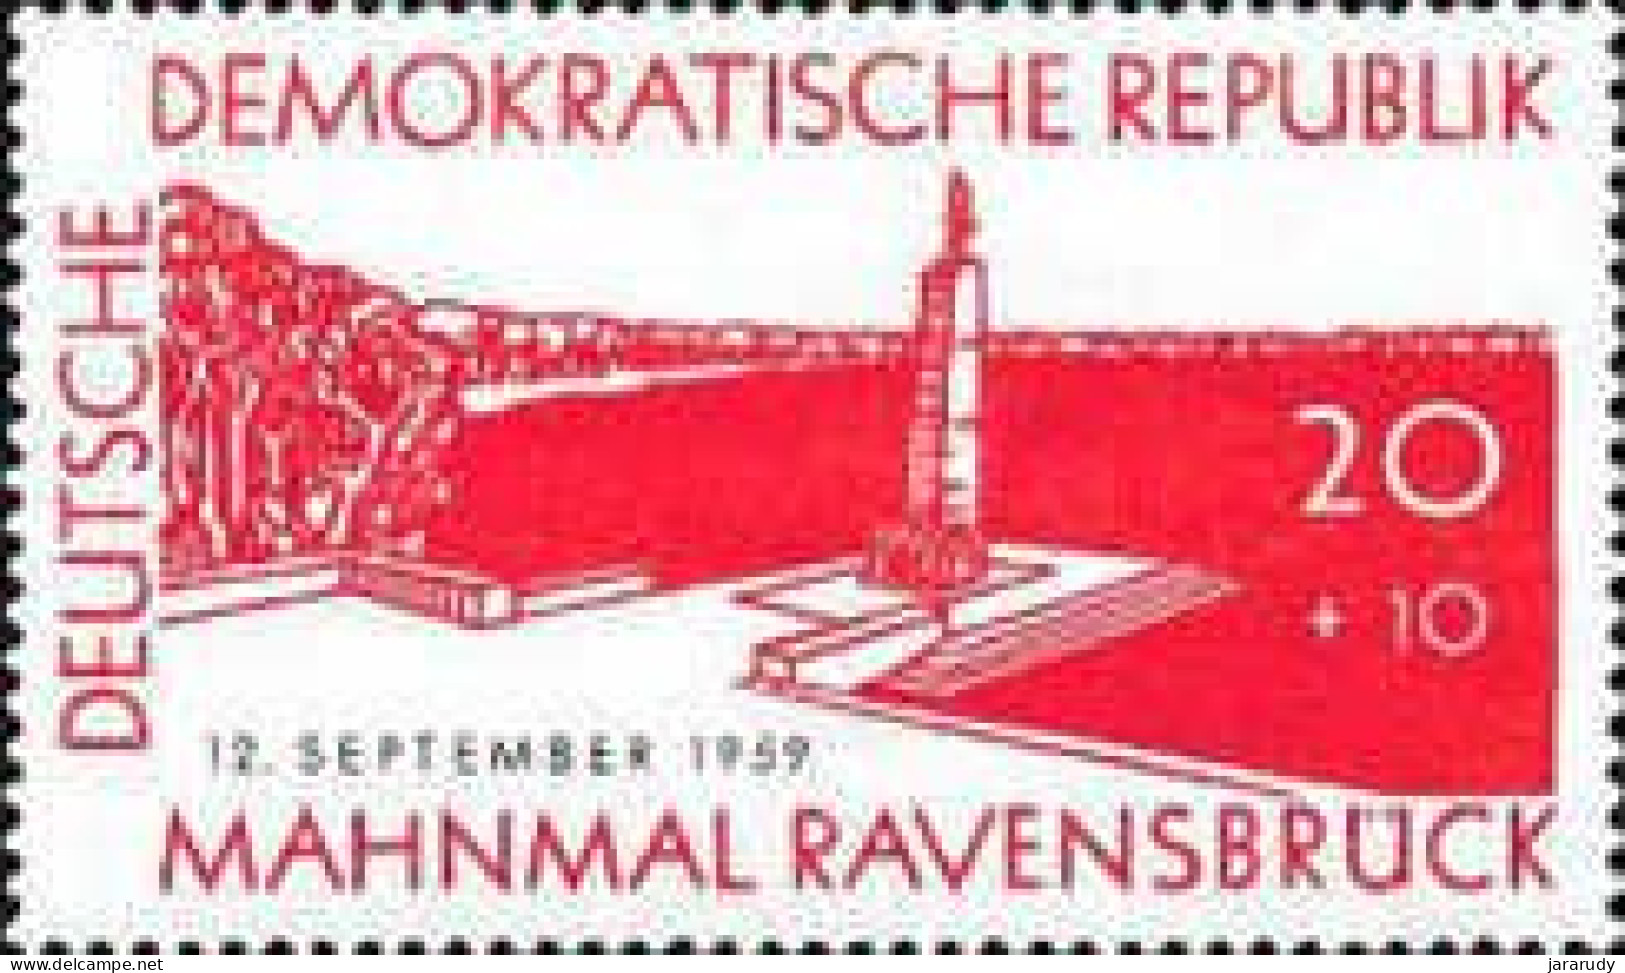 DDR MEMORIA 1959 Yv 435 MNH - Nuevos